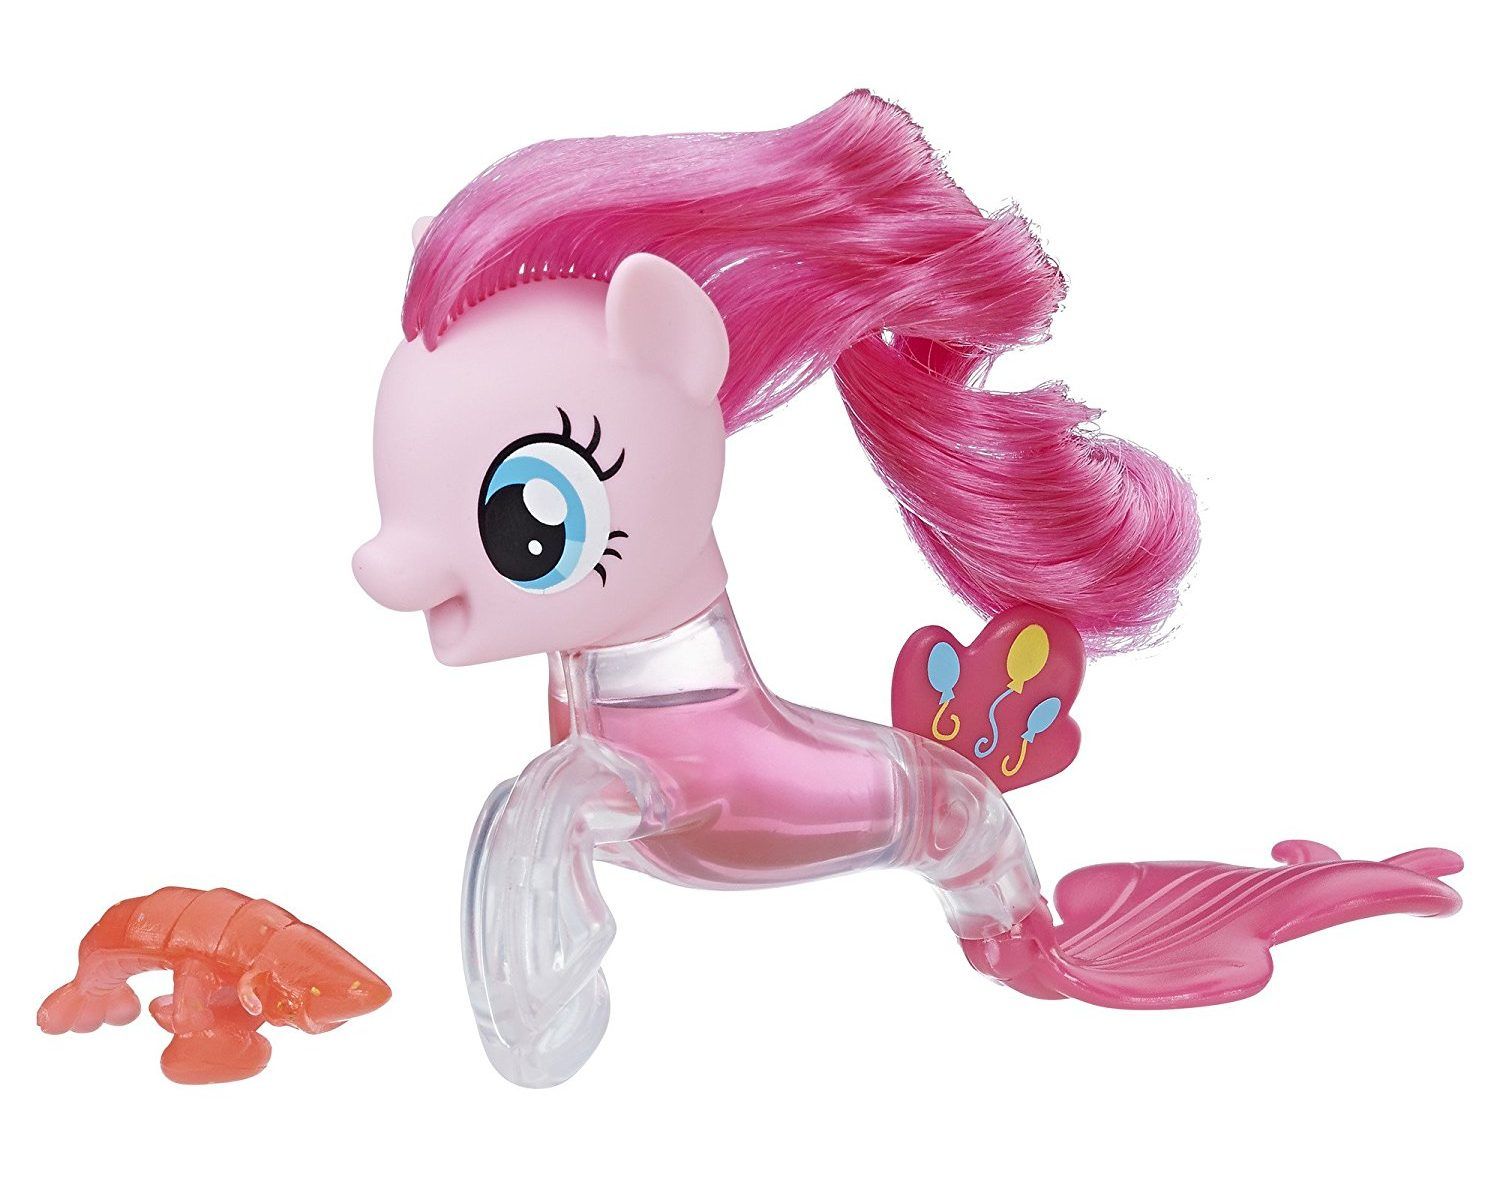 Новые игрушки май литл пони. My little Pony Toys Пинки Пай. Пинки Пай Хасбро. Игрушка Hasbro MLP фигурки "пони-подружки". Пони Хасбро Пинки Пай.